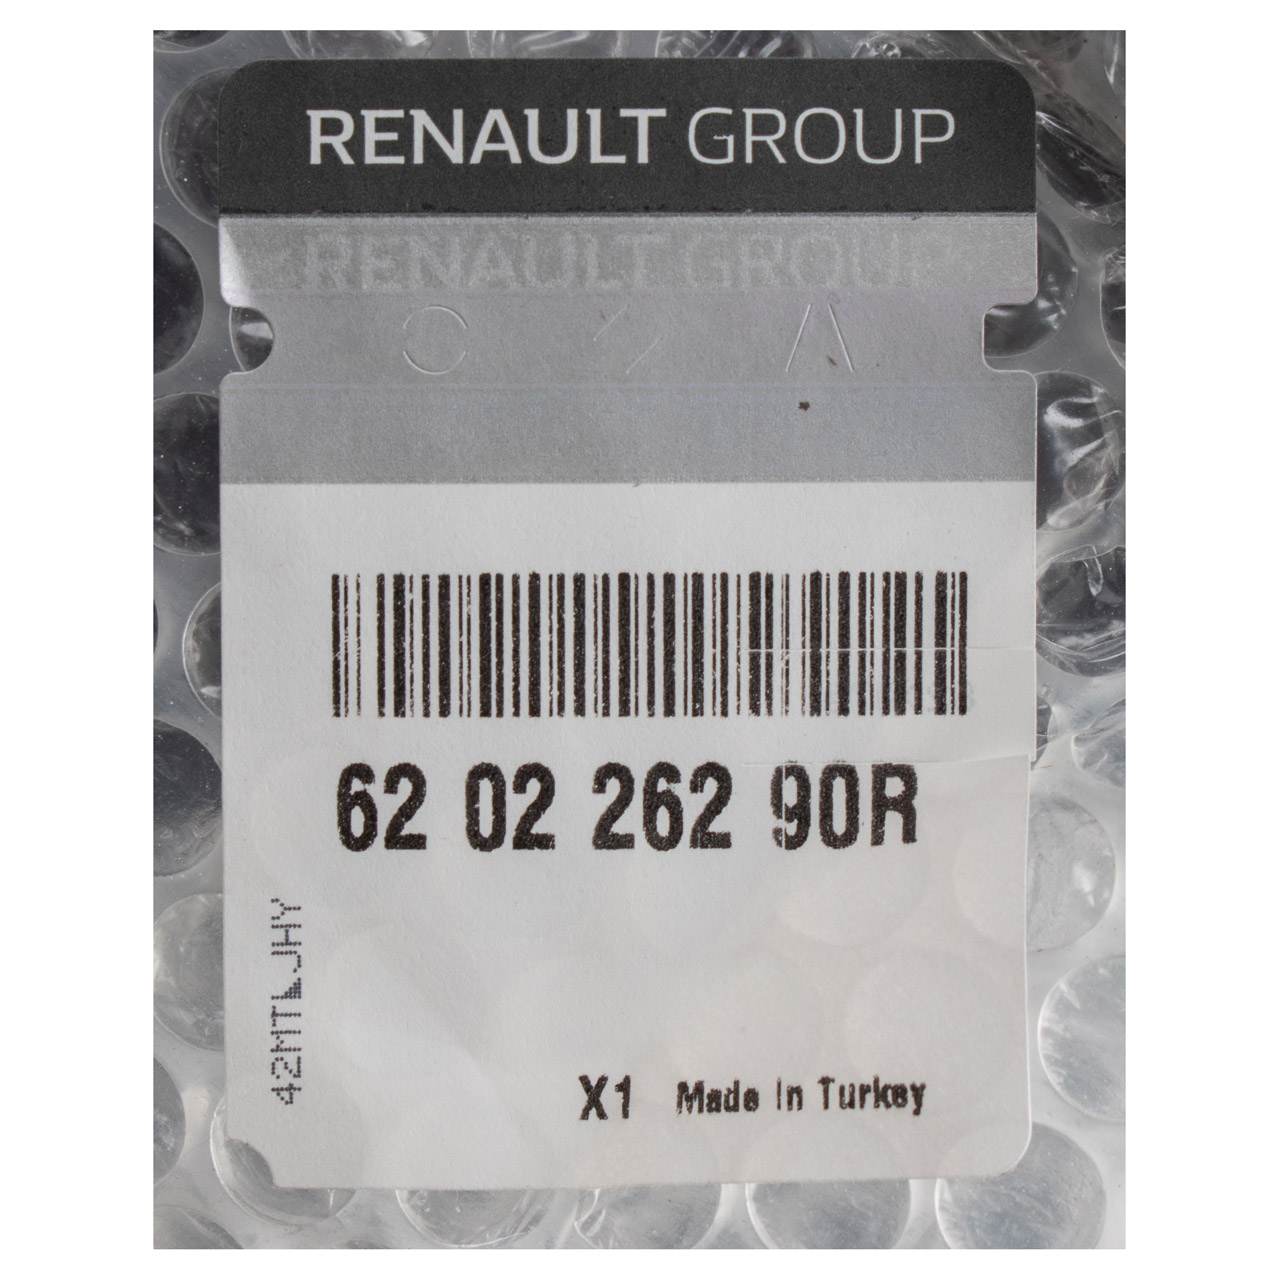 ORIGINAL Renault Stoßstange Frontstoßstange Clio 4 ab MJ 2016 vorne 620226290R